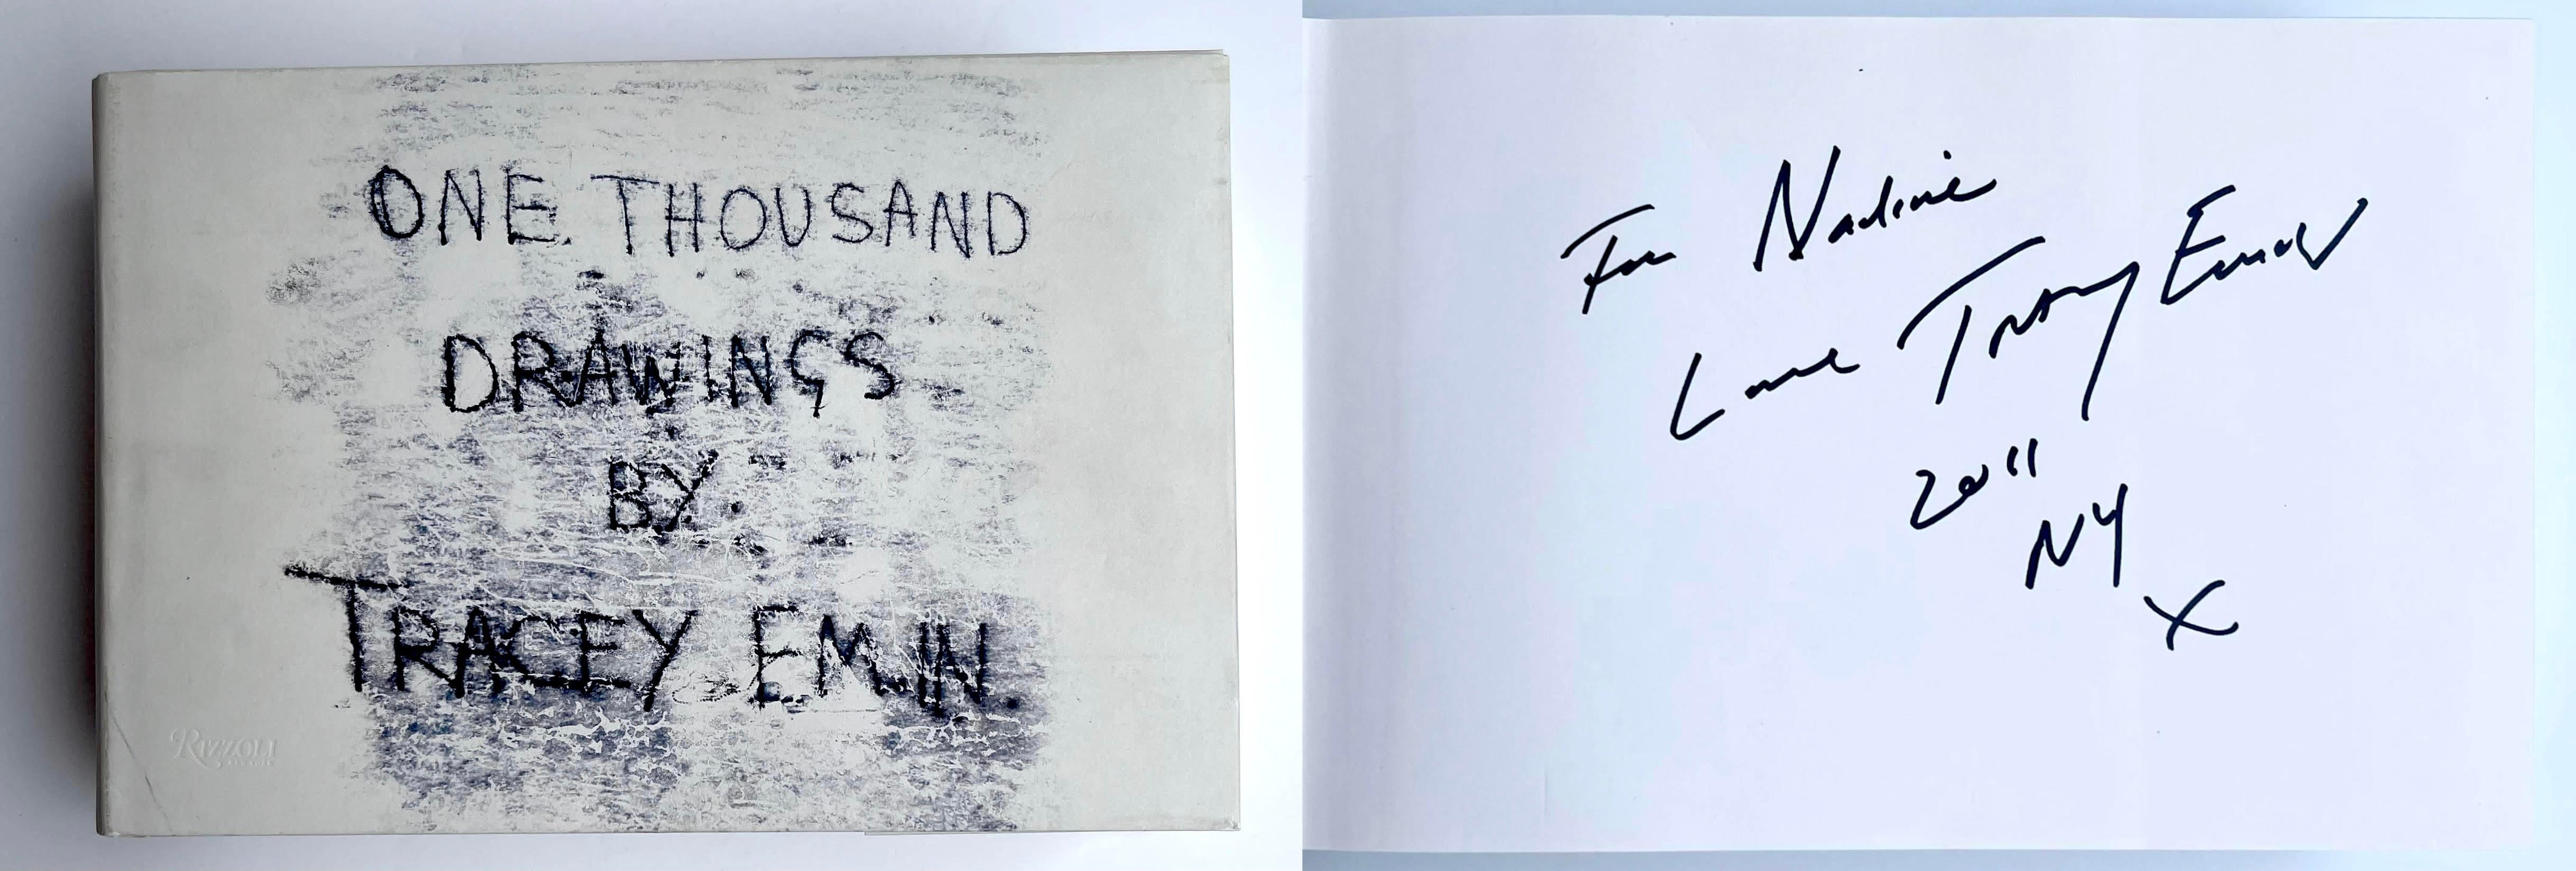 One Thousand Drawings par Tracey Emin (livre signé et inscrit à la main pour Nadine)